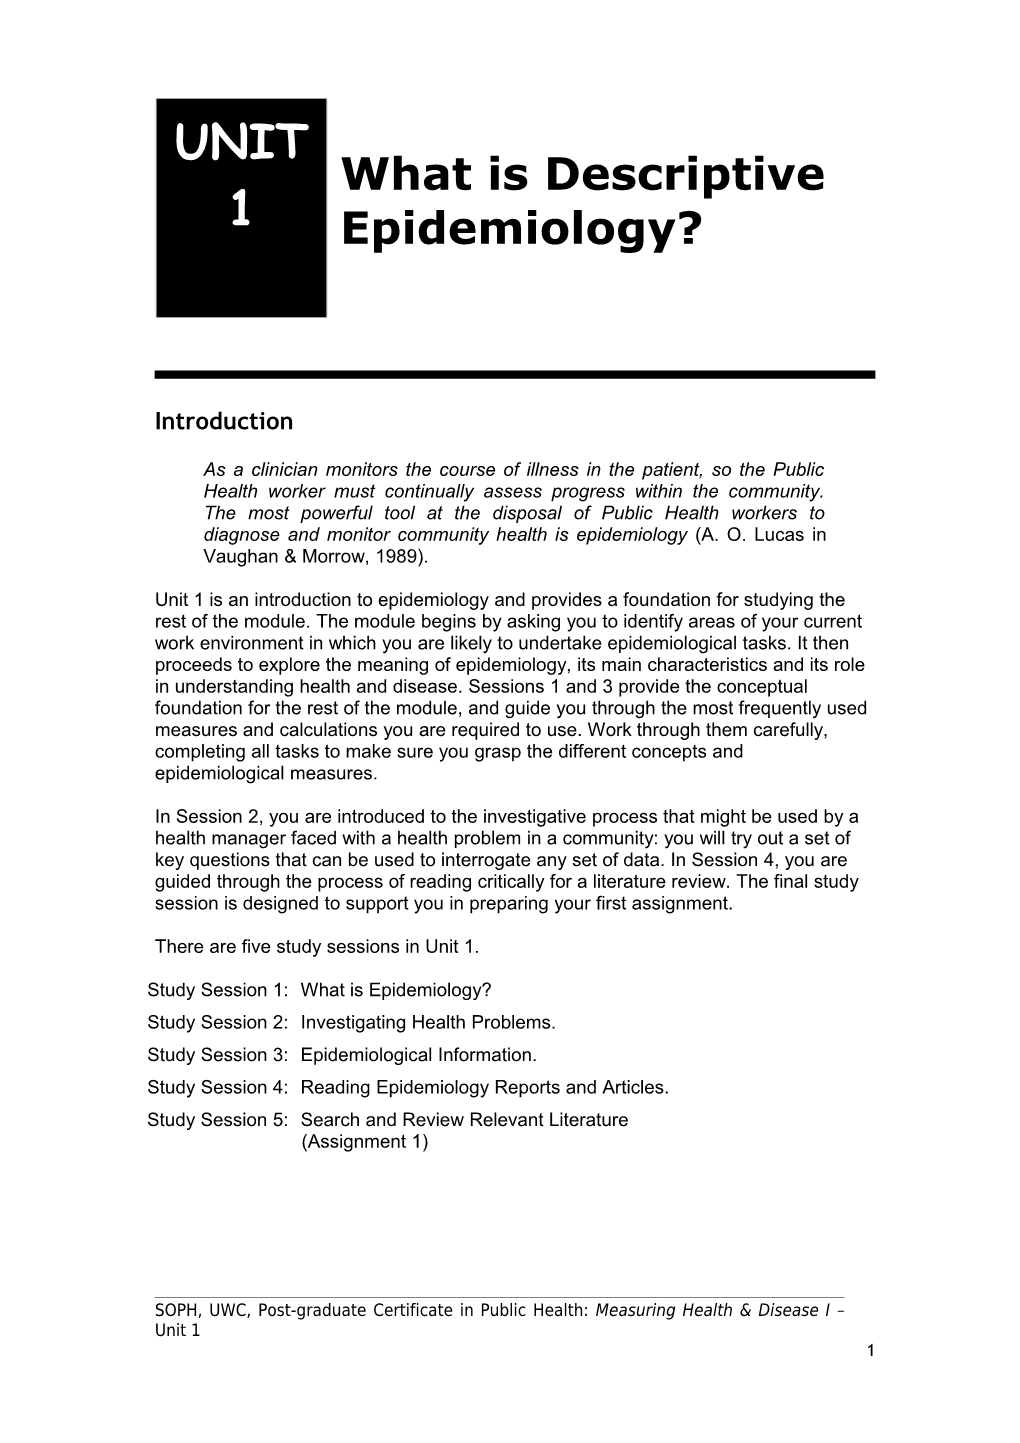 What Is Descriptive Epidemiology?